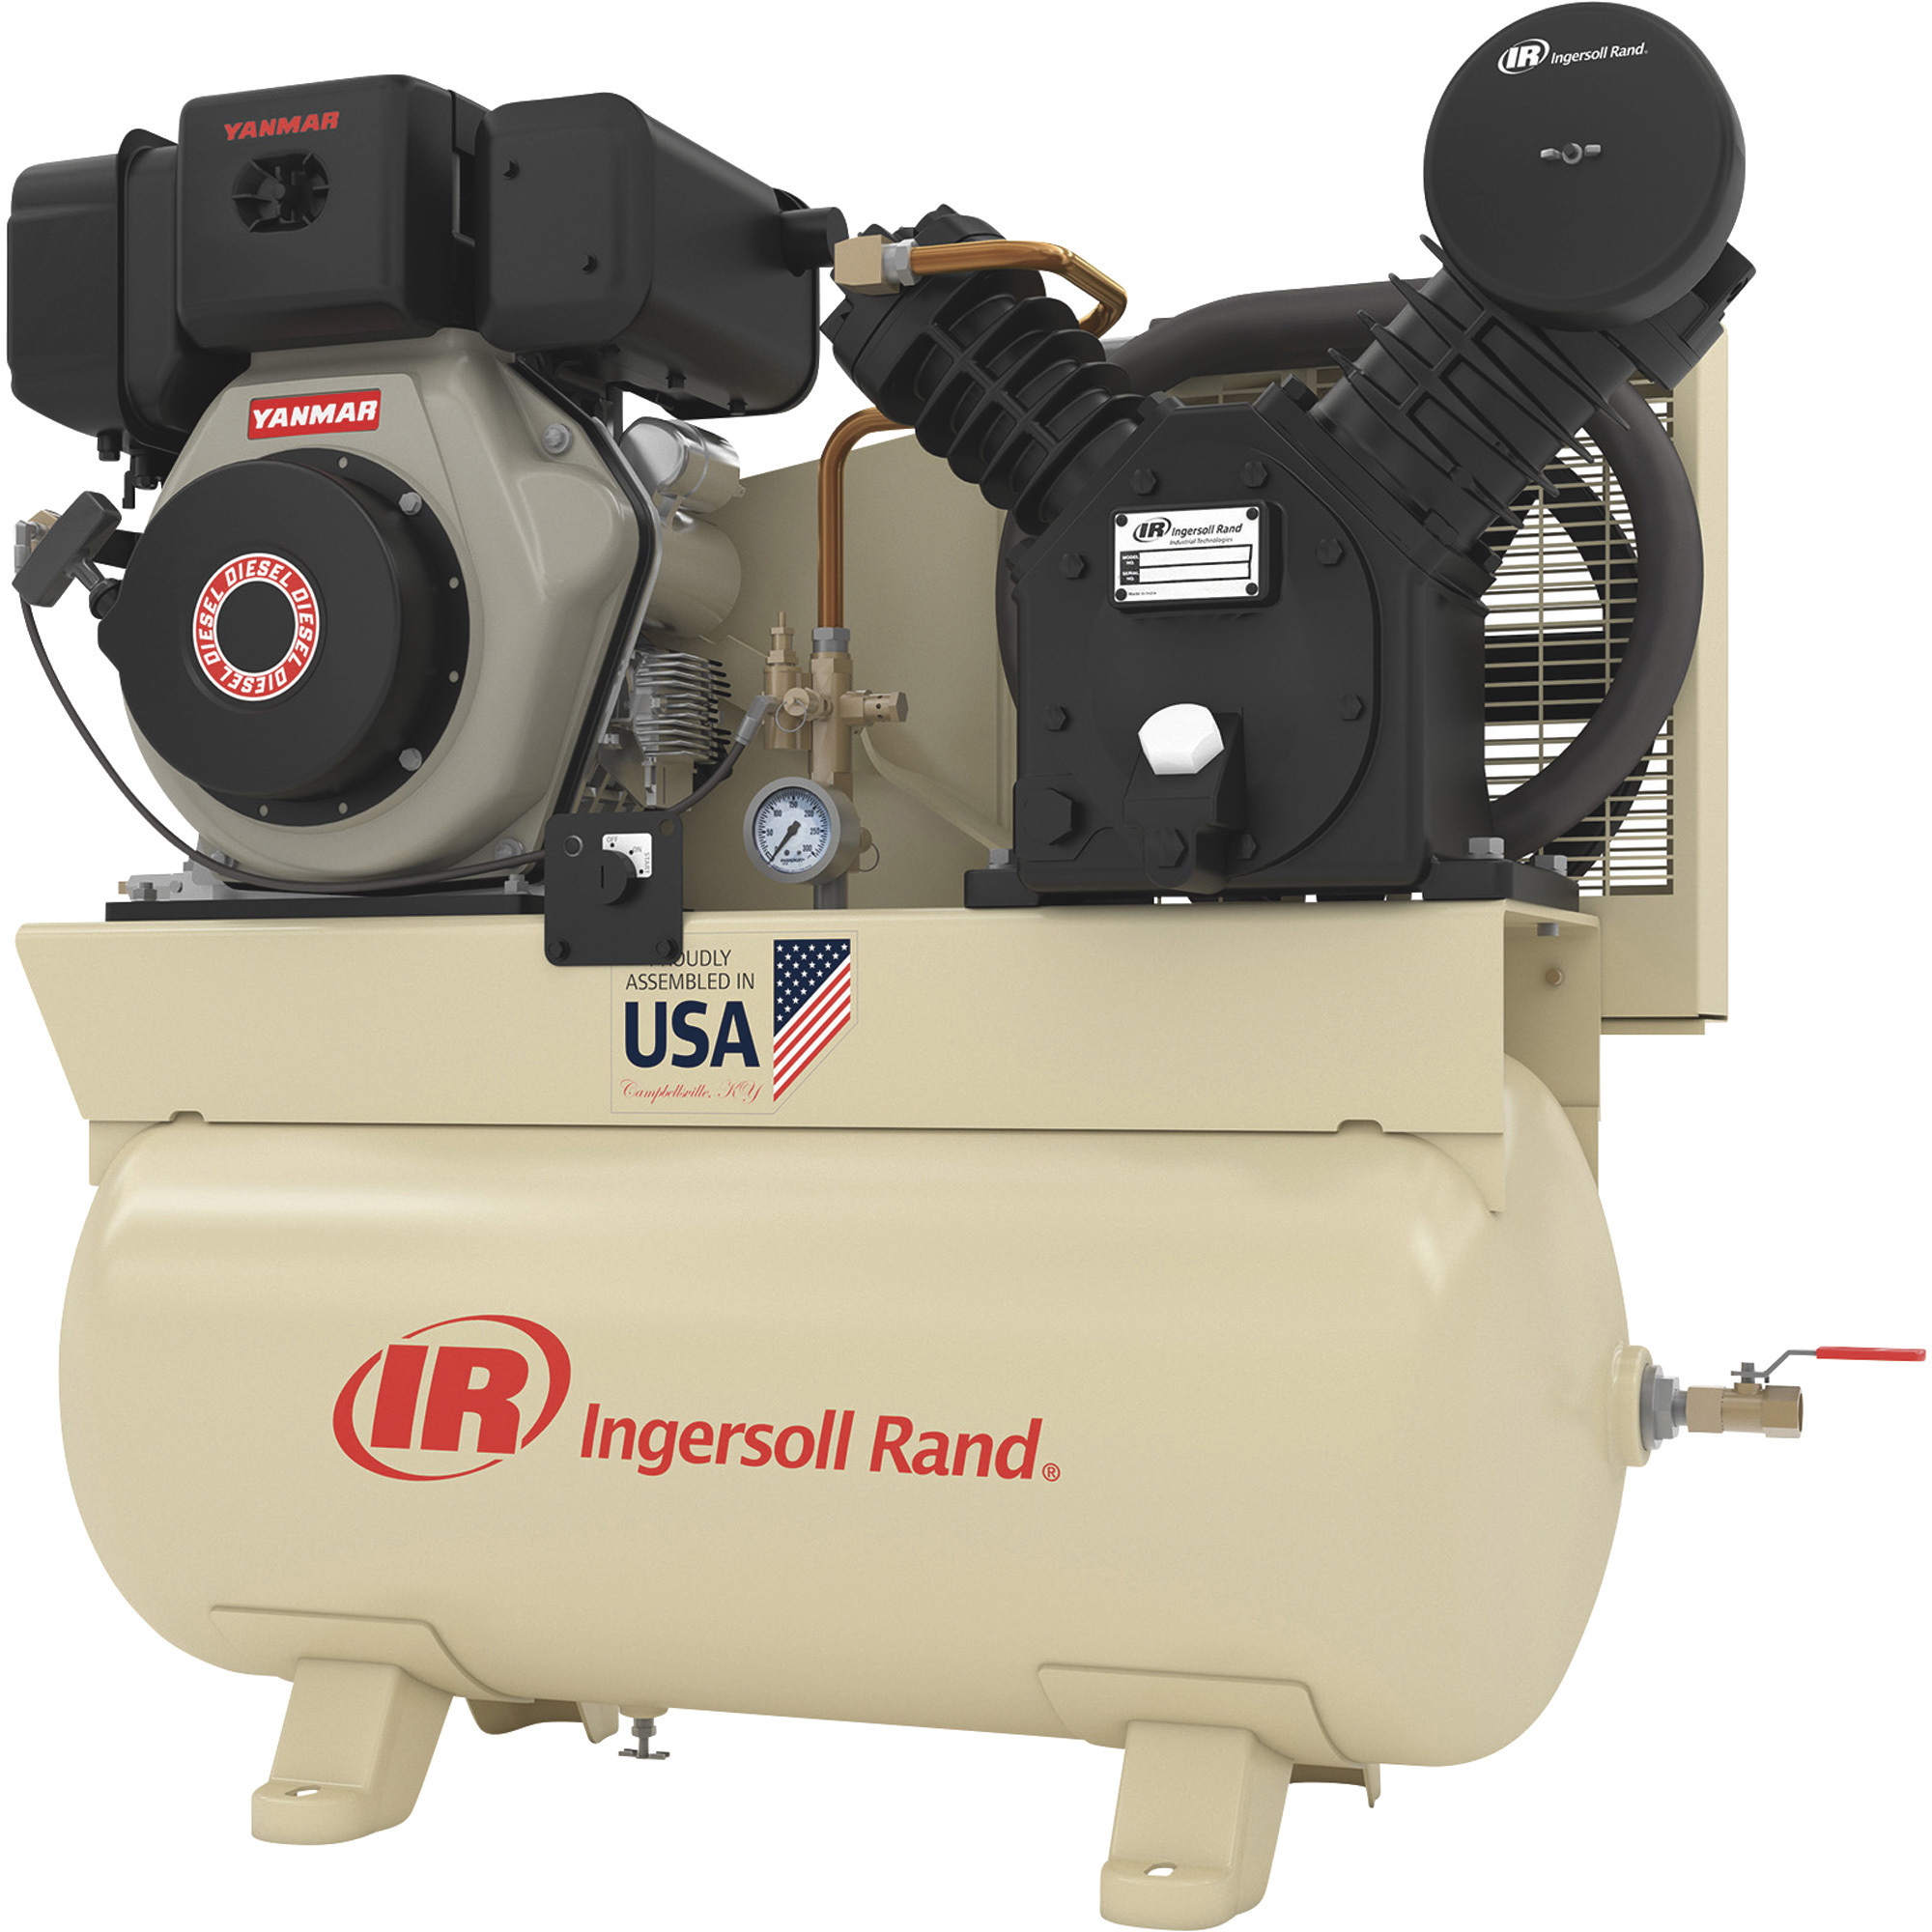 Ingersoll Rand Diesel-Powered Air Compressor, 10 HP Yanmar Diesel